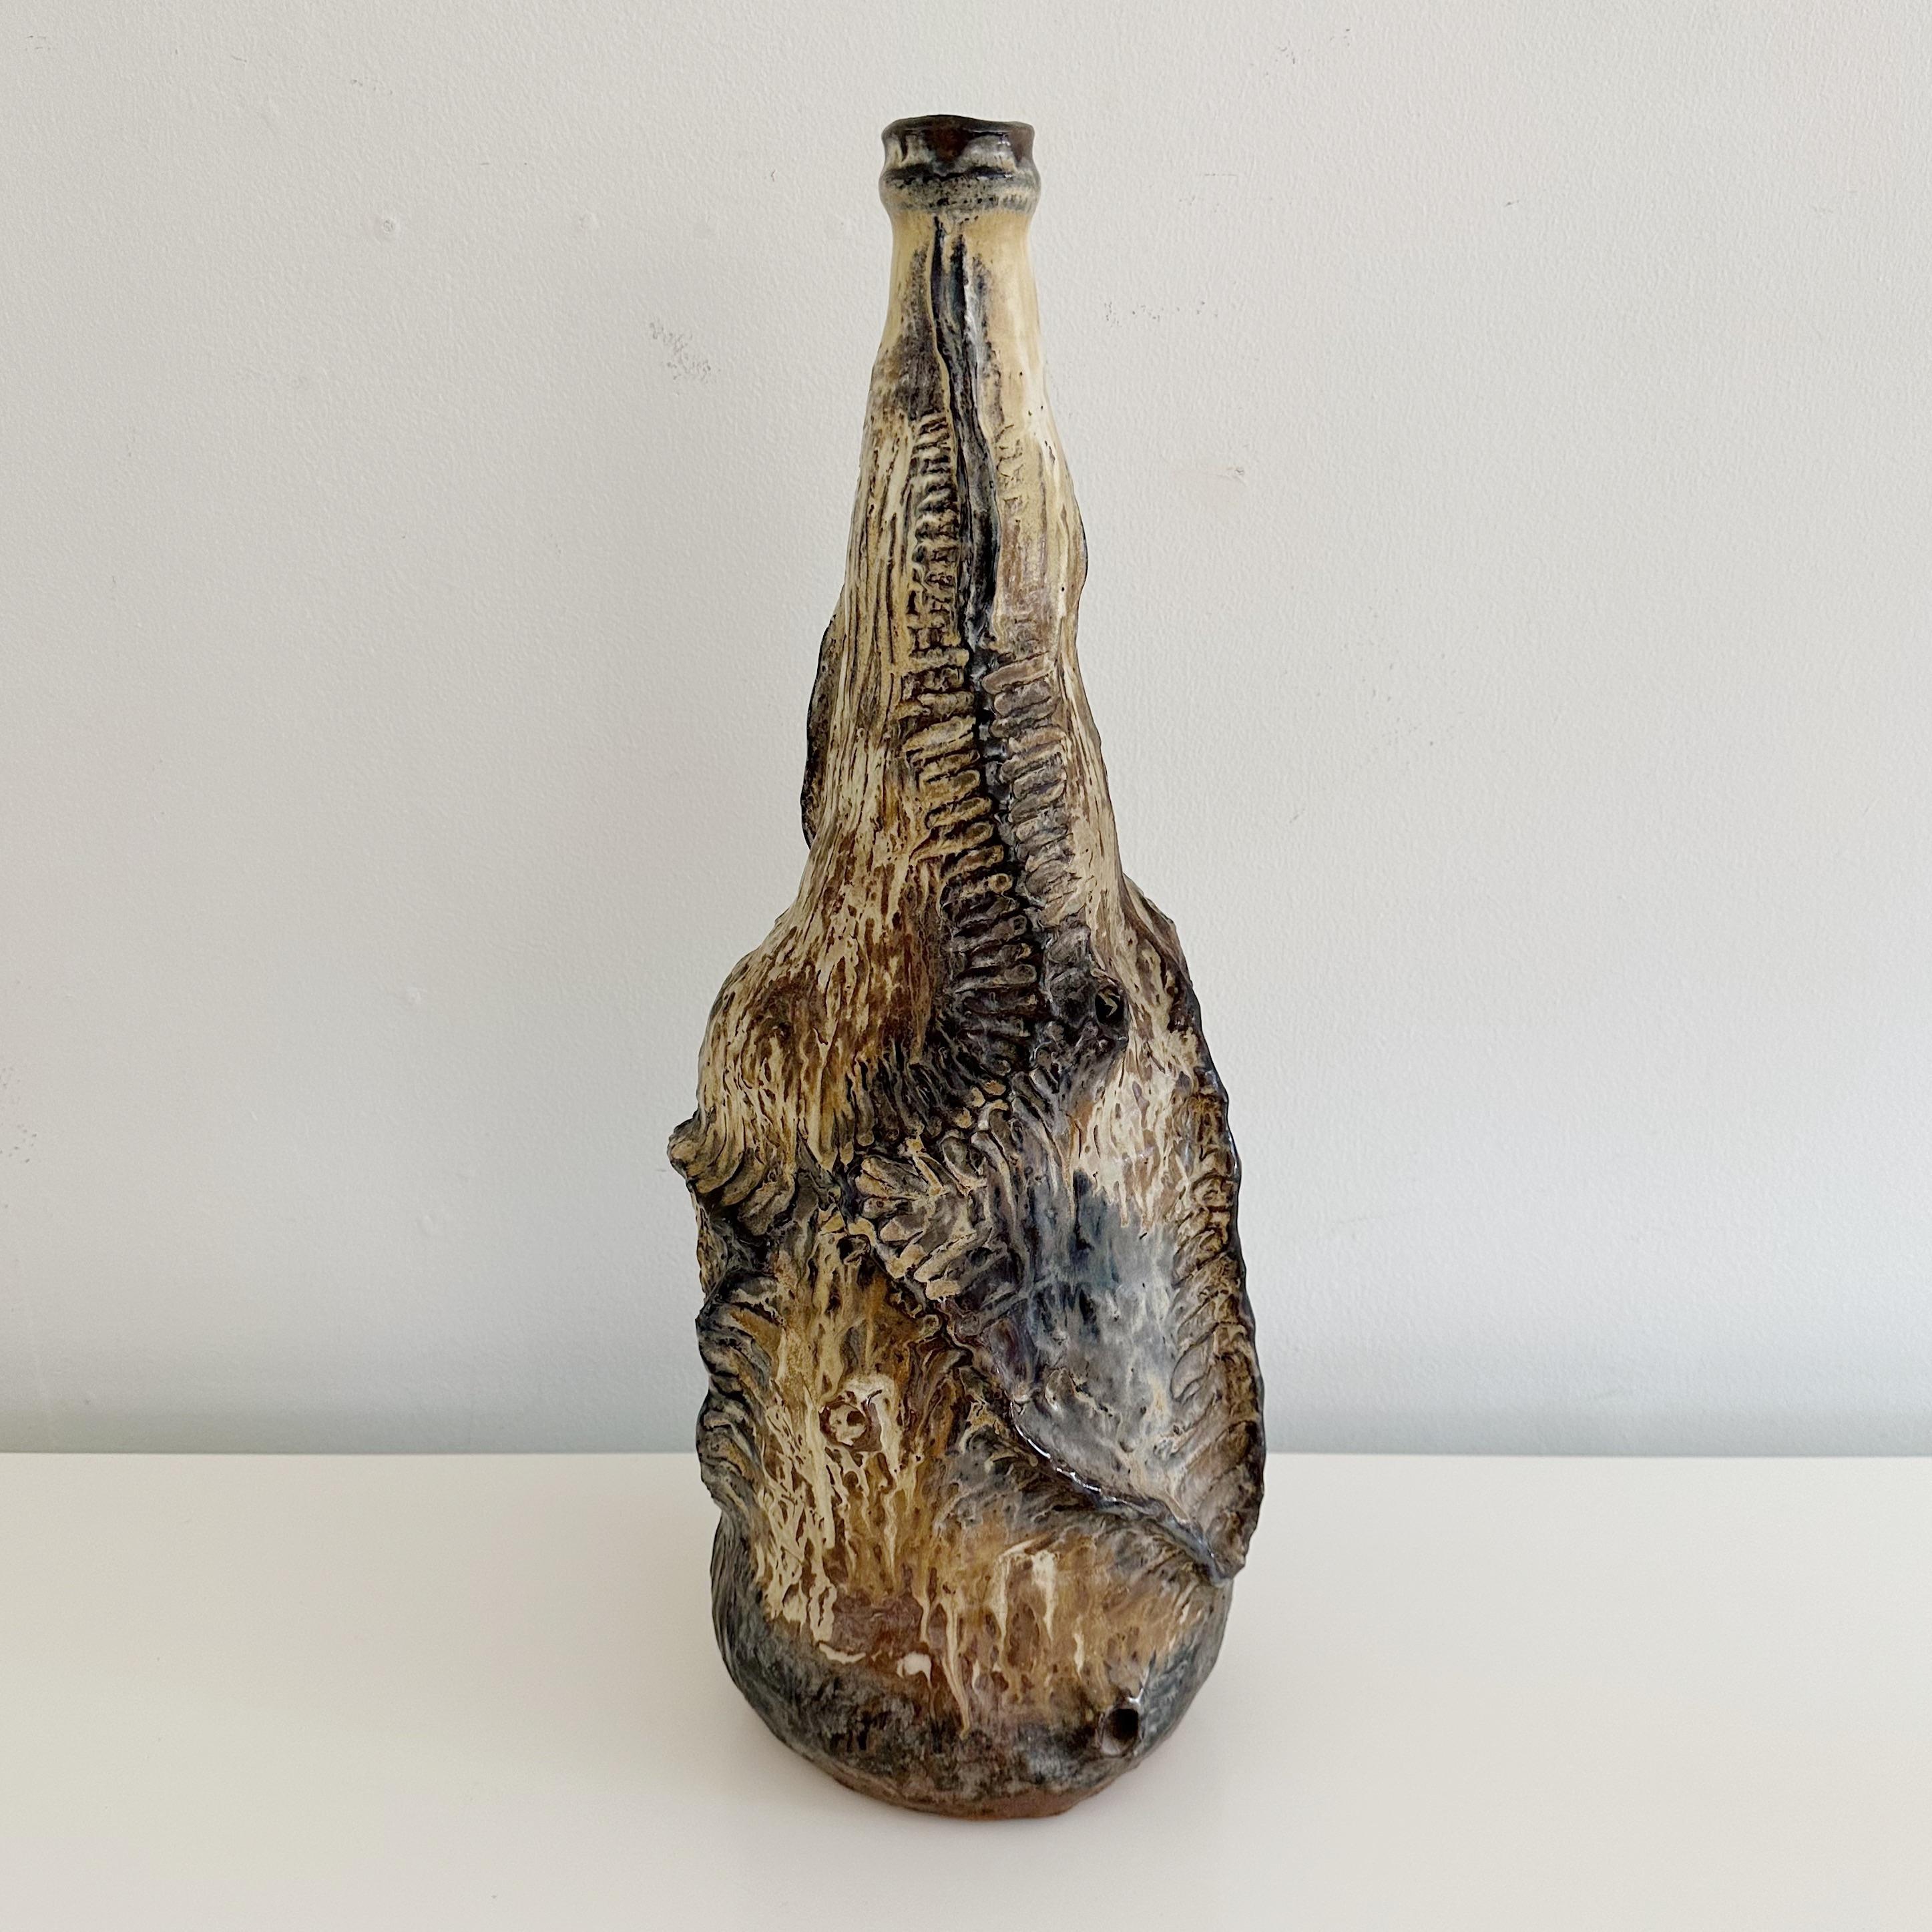 Style brutaliste grand vintage organique studio Terracotta pottery forme abstraite bottleneck vase, non signé du milieu du 20e siècle. Dans des tons organiques de brun, de crème, de tan et de terre d'ombre.